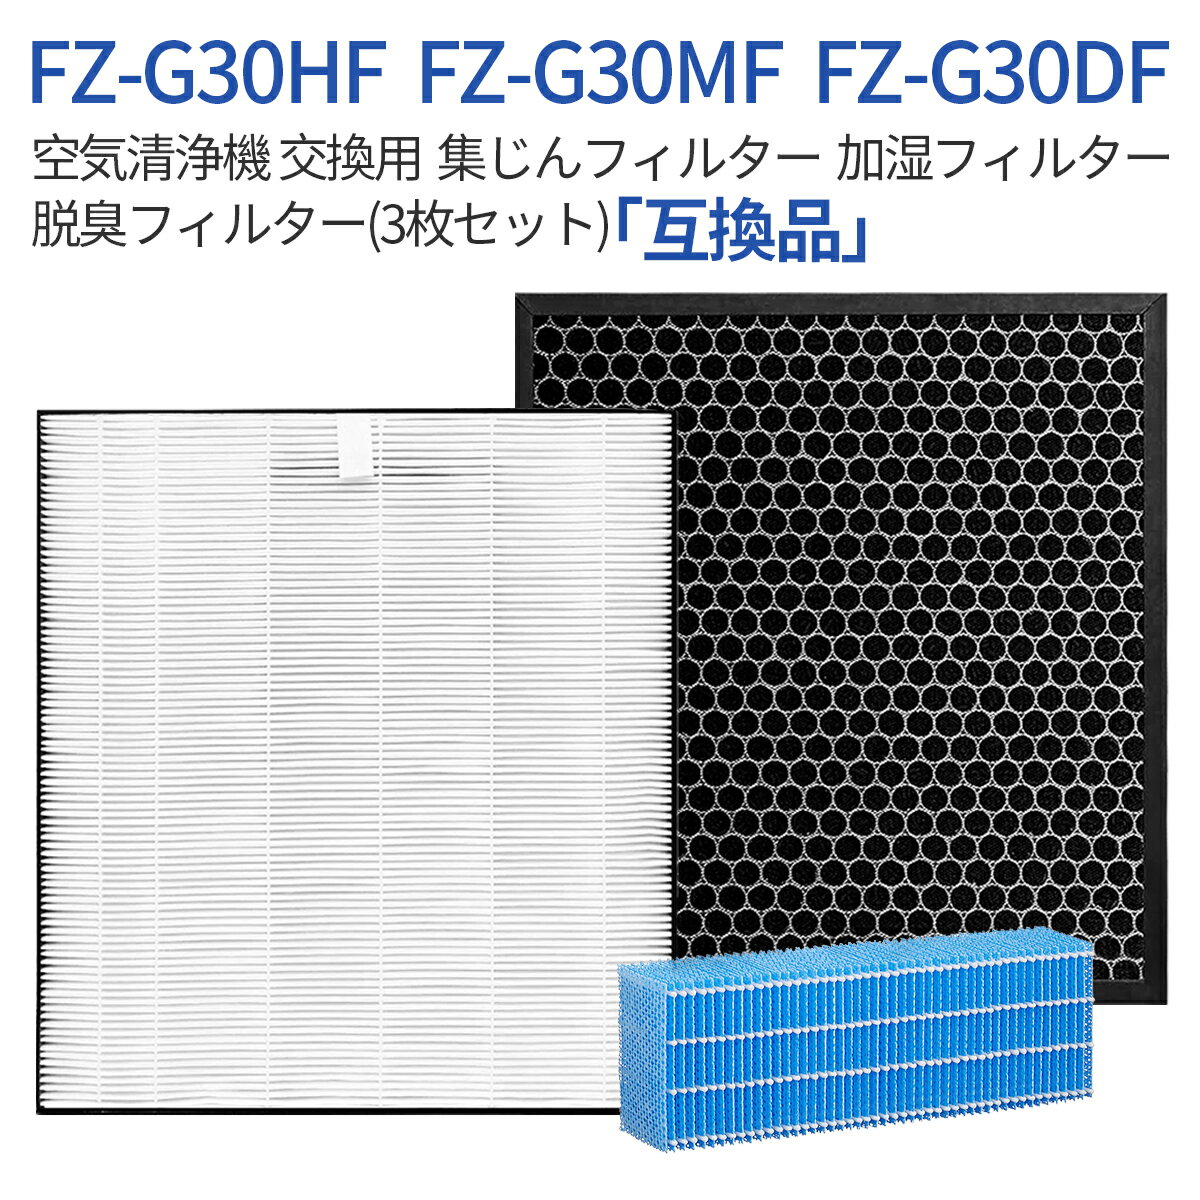 FZ-G30HF FZ-G30DF FZ-G30MF 集じんフィルター fz-g30hf 脱臭フィルター fz-g30df (FZ-H30DFの同等品) 加湿フィルター fz-g30mf シャー..